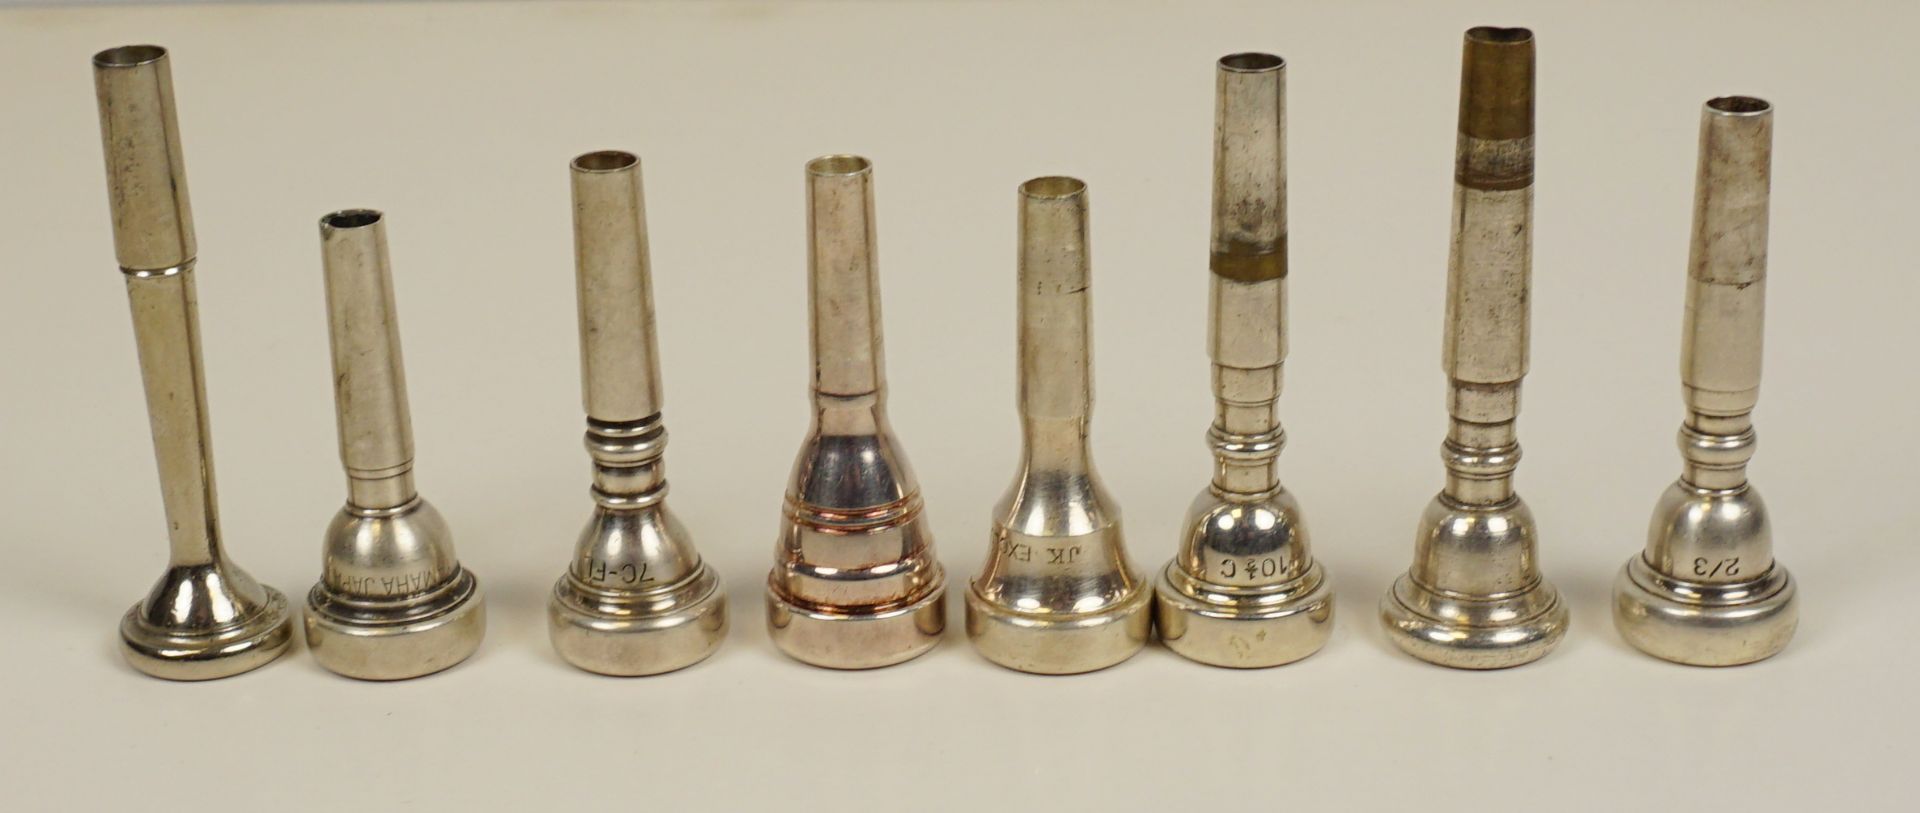 Trompete, Weltklang, Messing, Länge ca. 54cm - Bild 3 aus 4